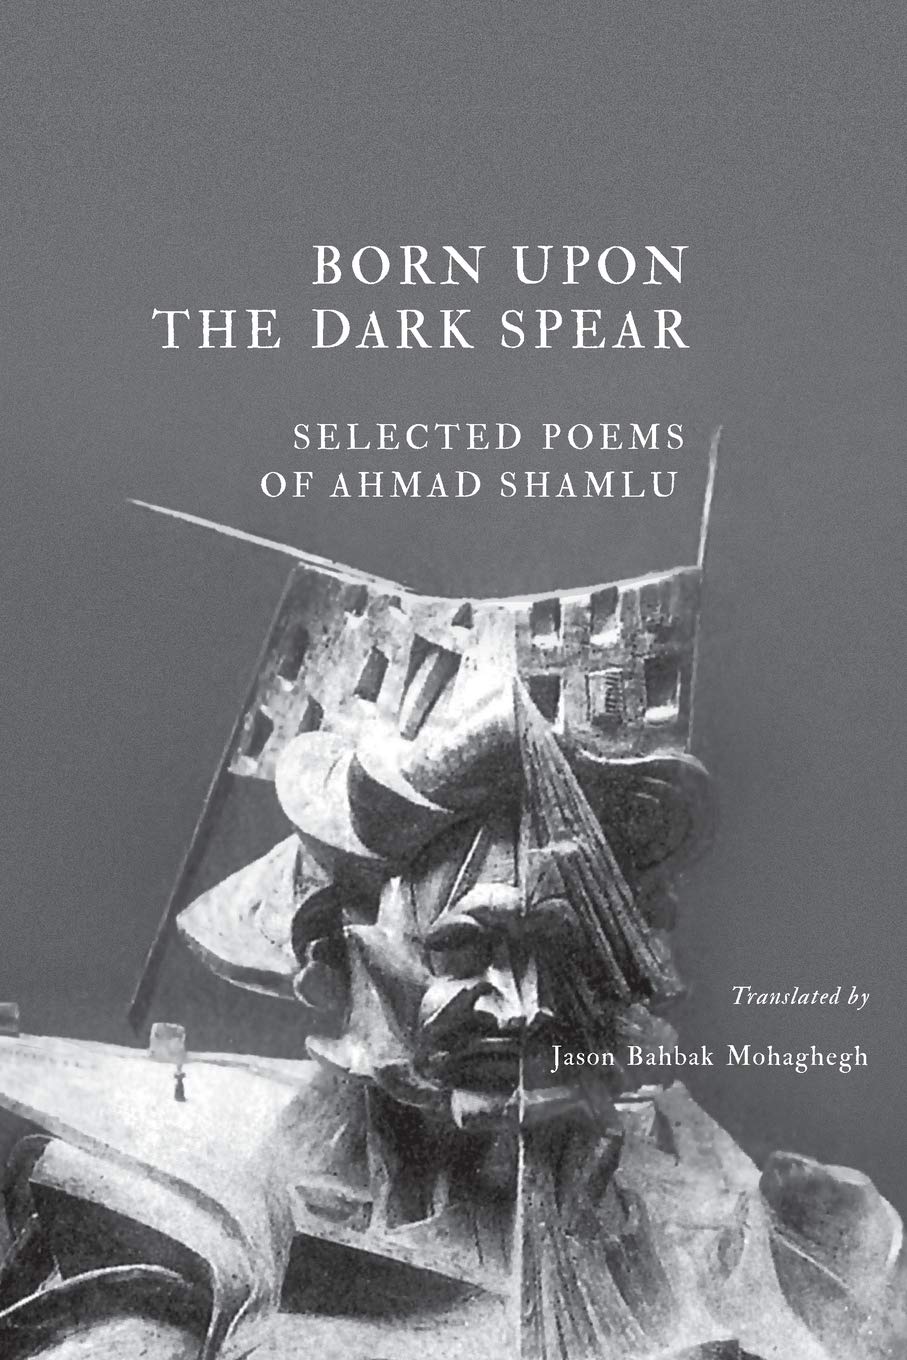 Born Upon the Dark Spear by Ahmad Shamlu